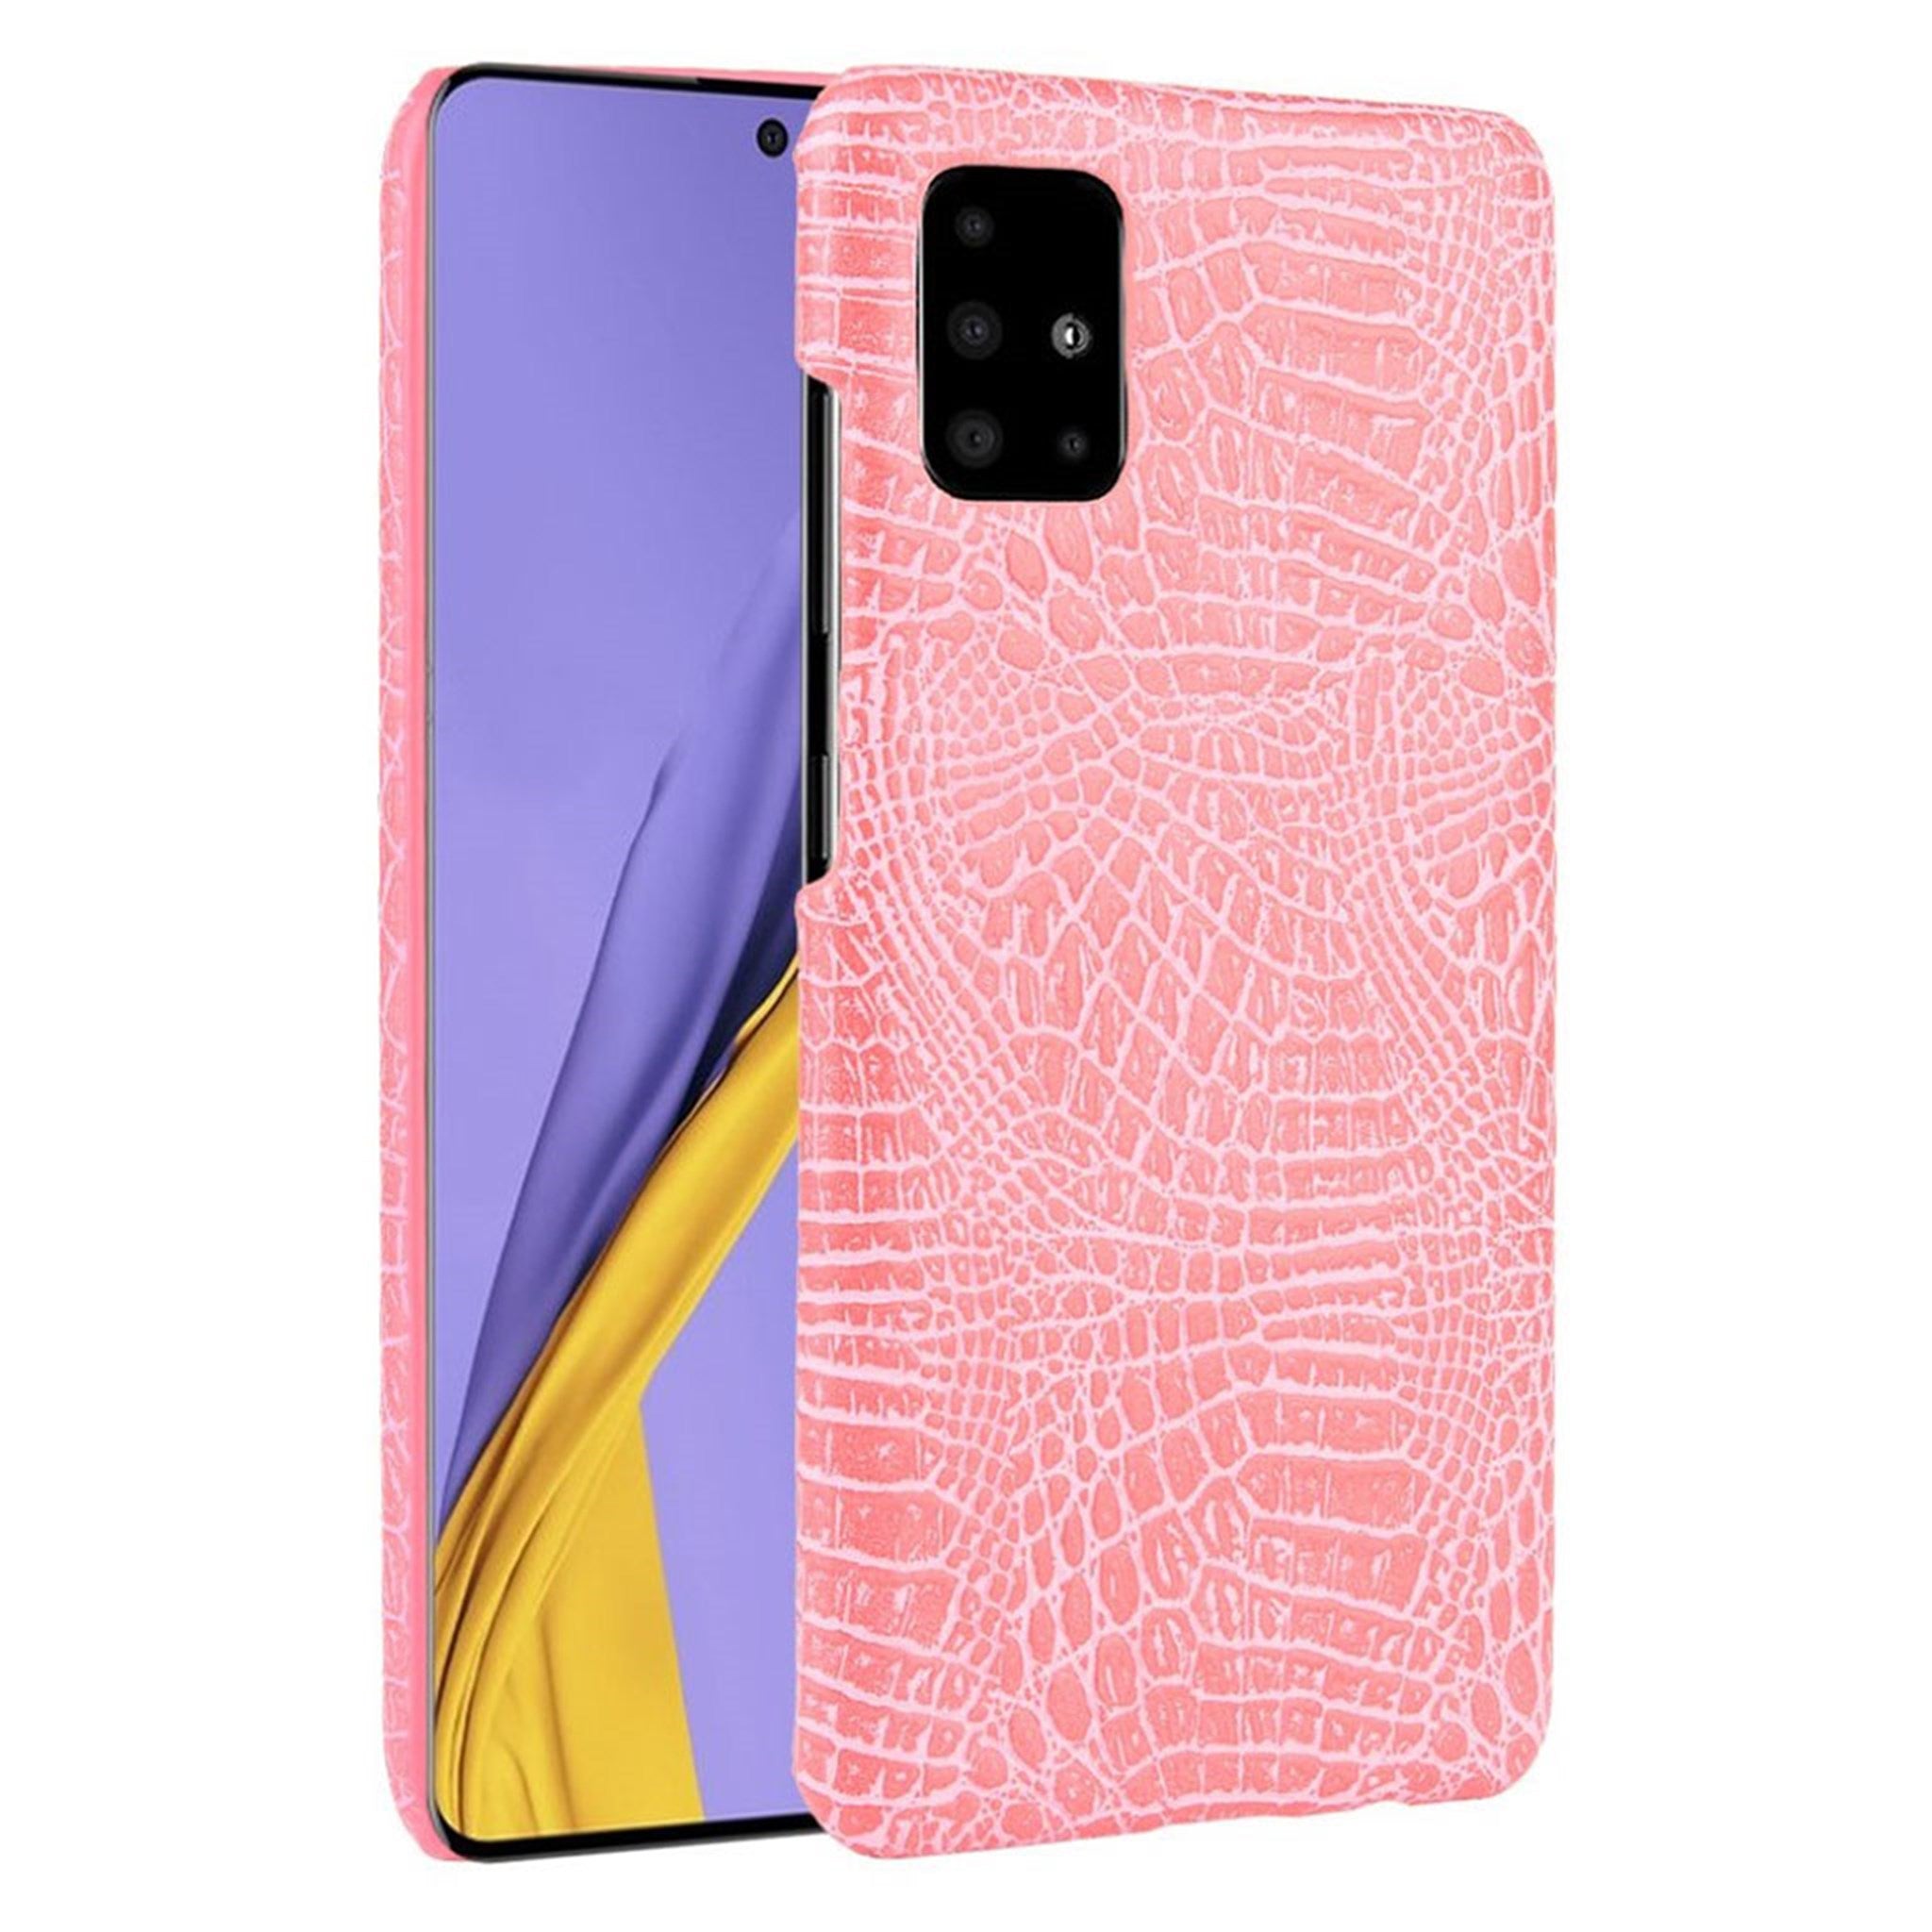 Croco case - Samsung Galaxy A71 - Pink